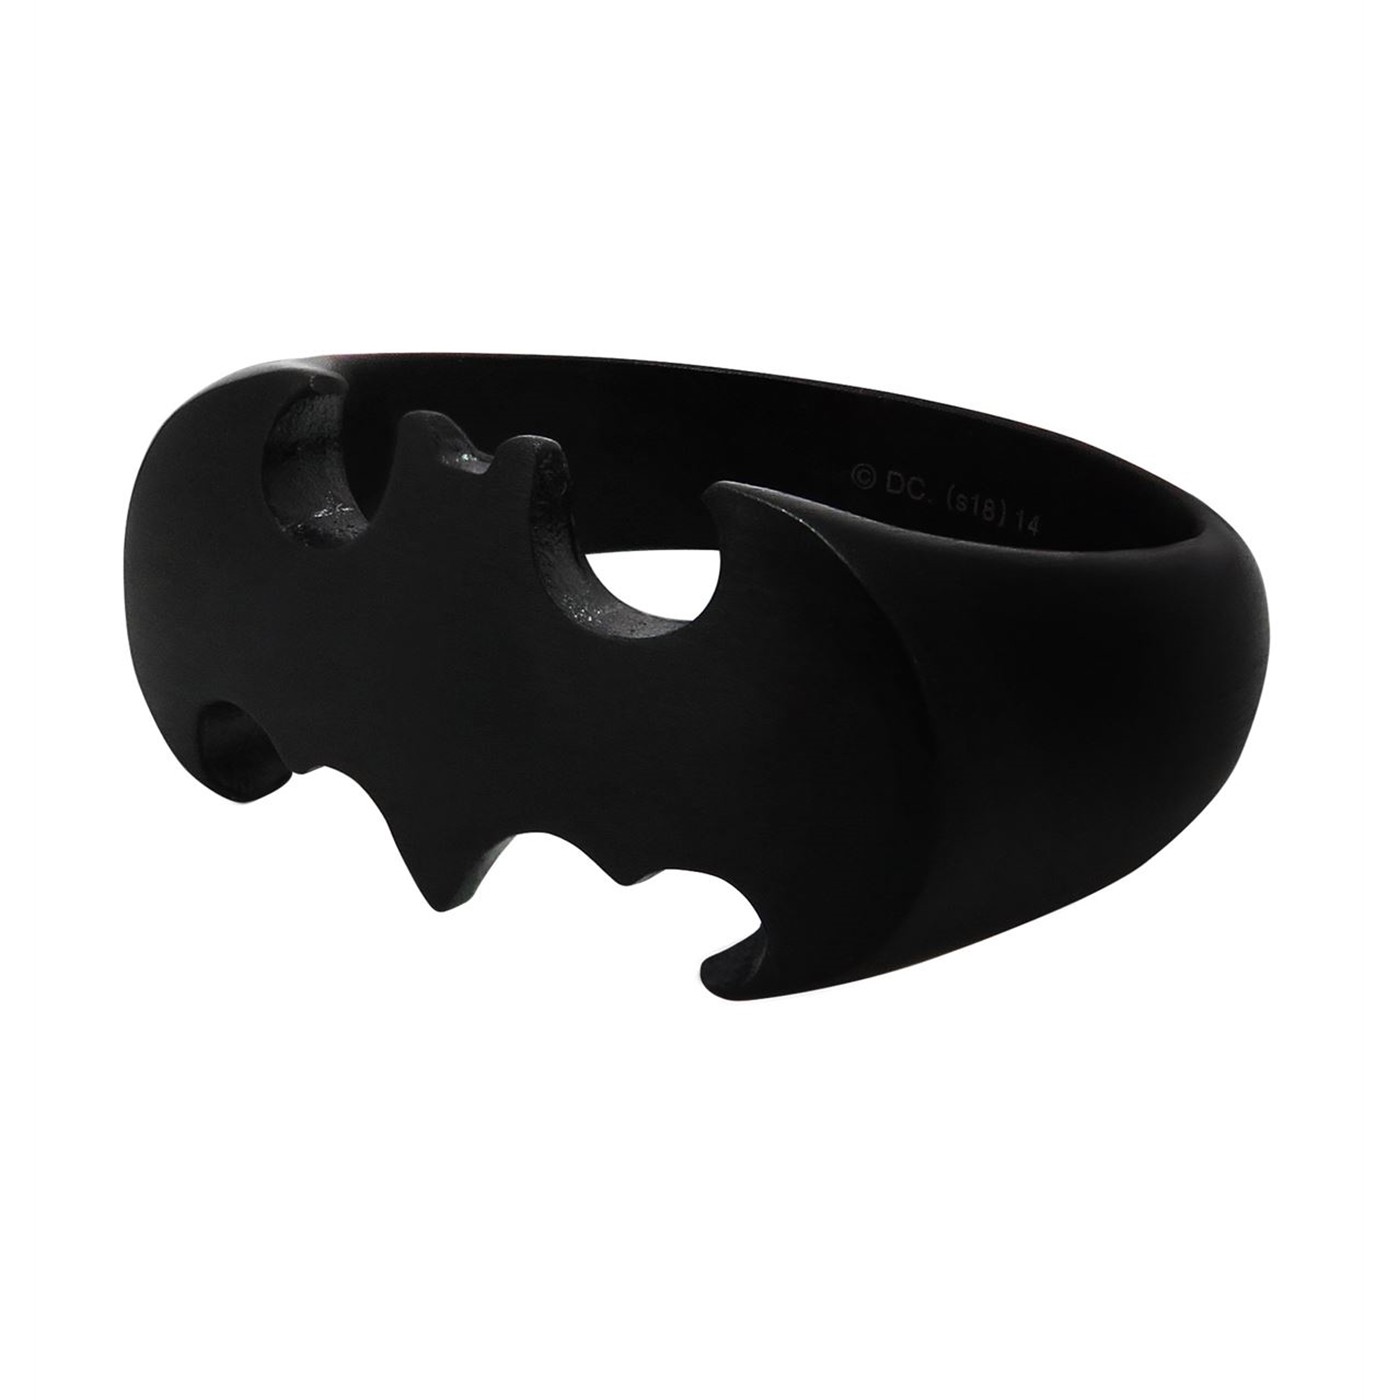 Batman Die-Cut Black Stainless Steel Ring